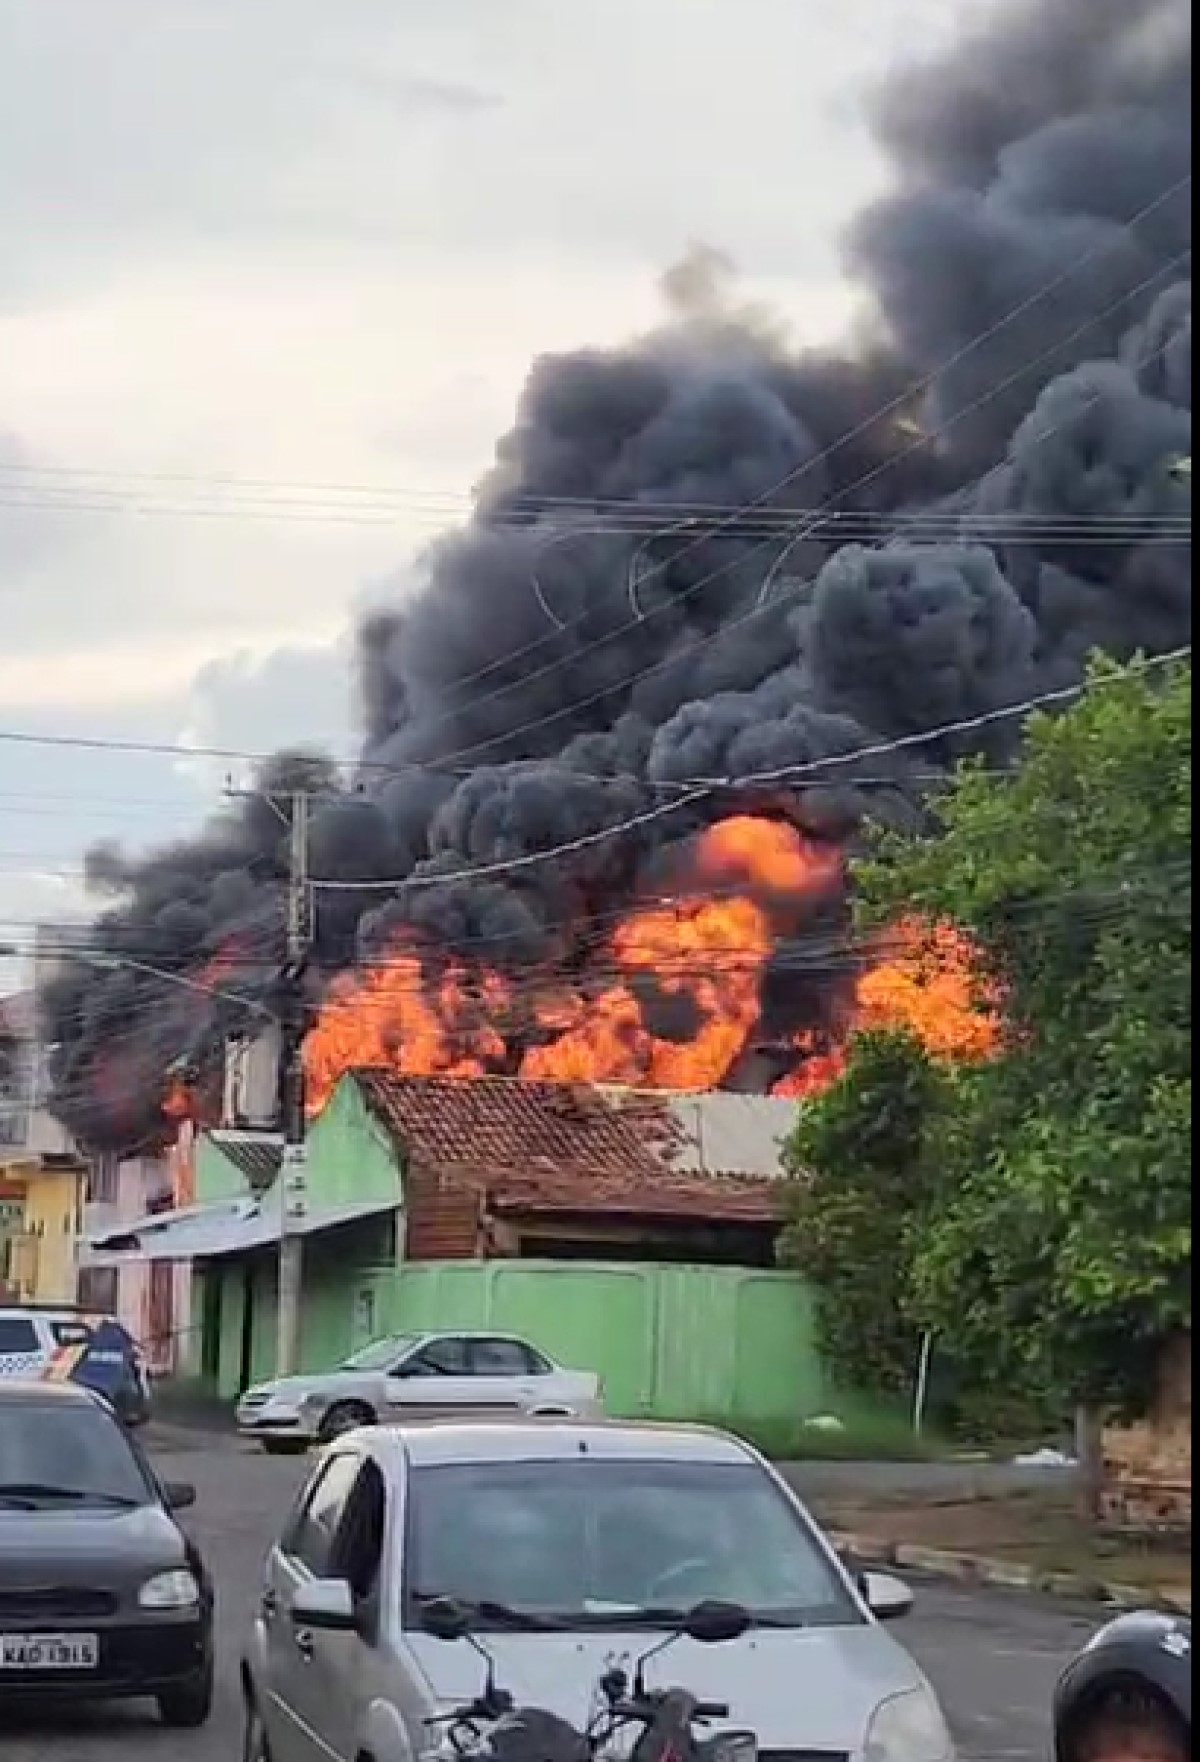 Incêndio de grandes proporções mobiliza bombeiros em Cuiabá